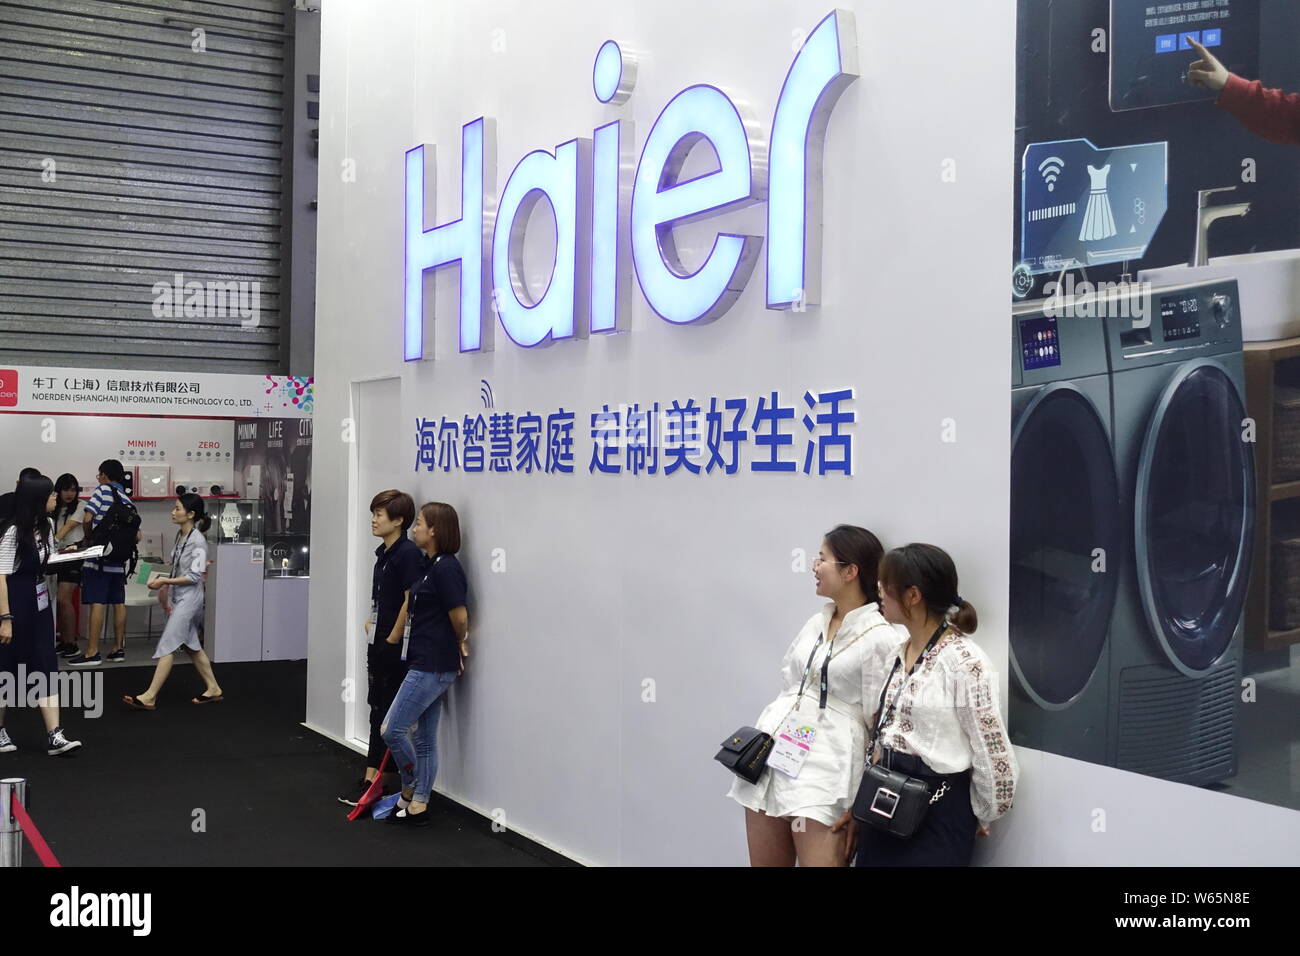 ---- Leute besuchen Sie den Stand von Haier während einer Ausstellung in Shanghai, China, 26. Juli 2018. Chinesische consumer electronics Firma Haier Haushaltsgeräte Stockfoto